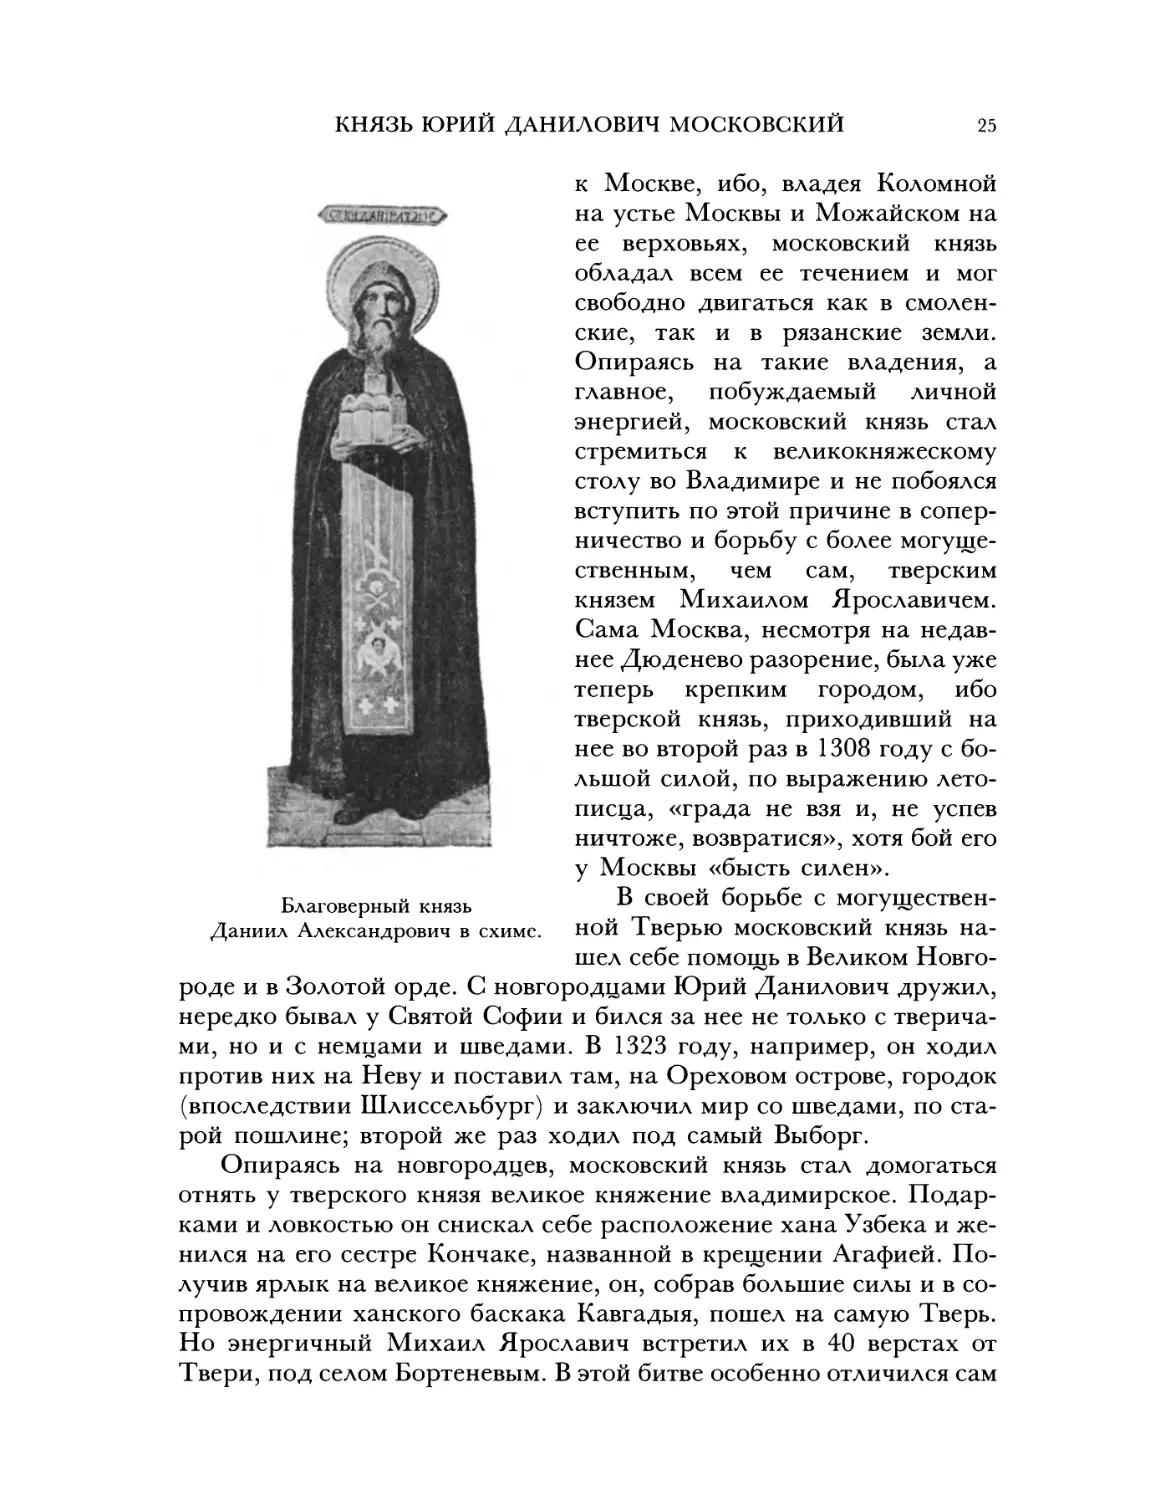 Князь Юрий Данилович Московский